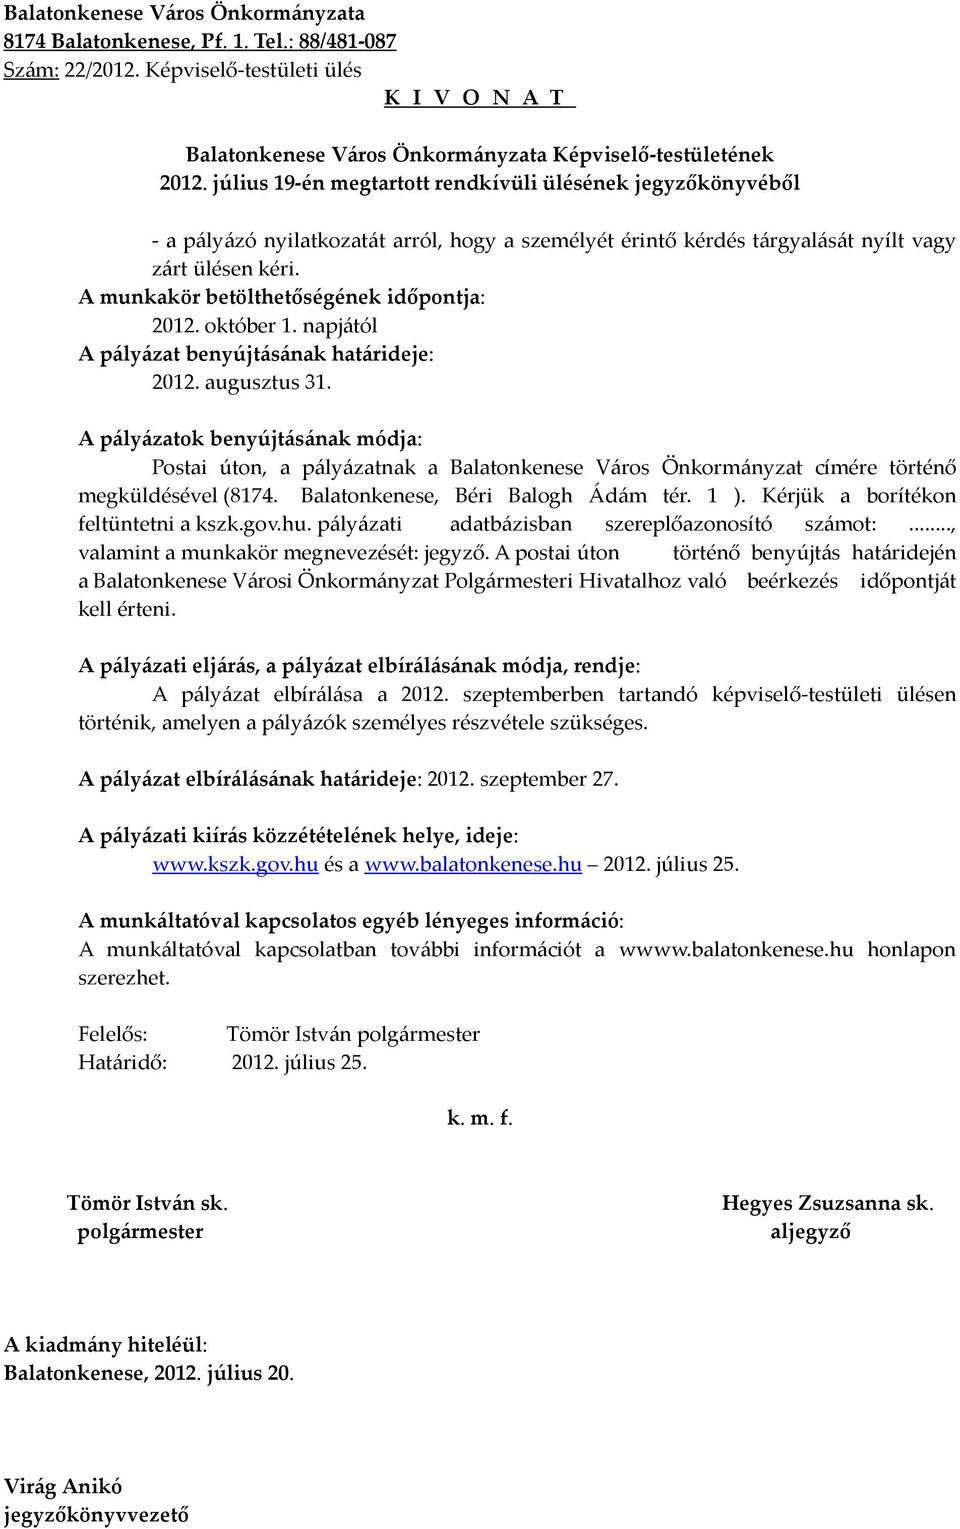 Balatonkenese, Béri Balogh Ádám tér. 1 ). Kérjük a borítékon feltüntetni a kszk.gov.hu. pályázati adatbázisban szereplőazonosító számot:..., valamint a munkakör megnevezését: jegyző.